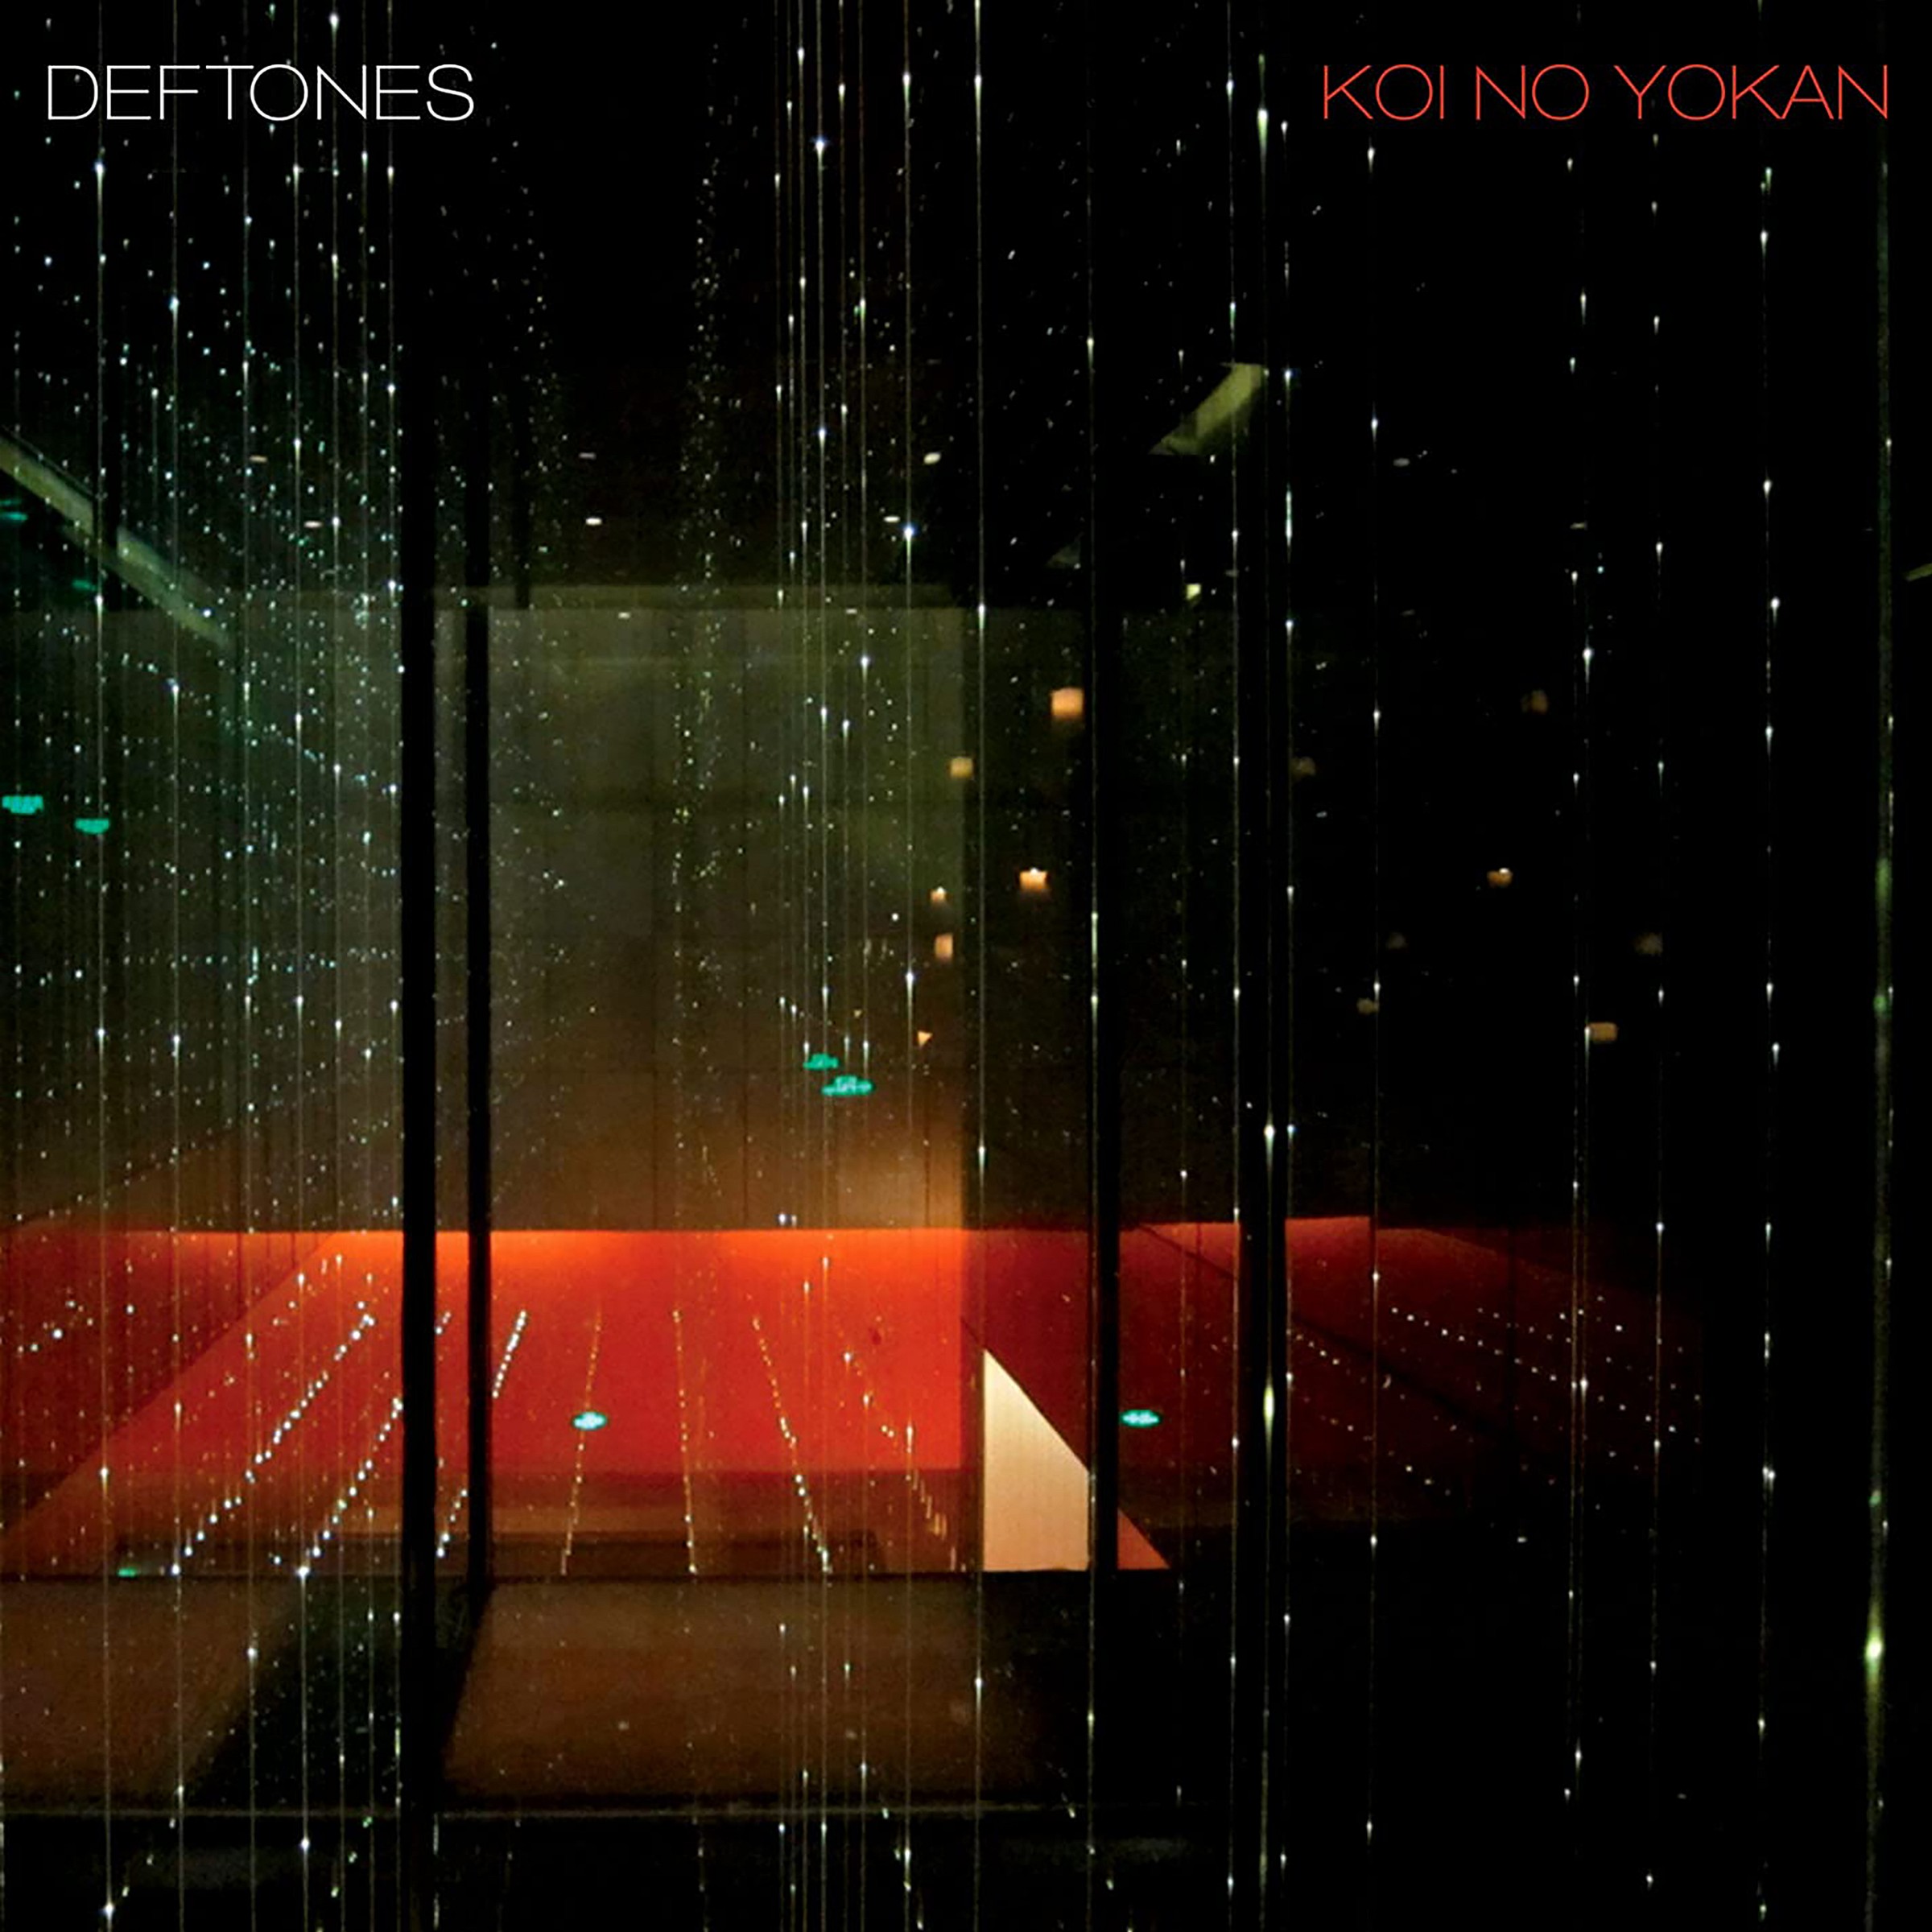 Deftones - Koi No Yokan - Album Cover POSTER - Lost Posters